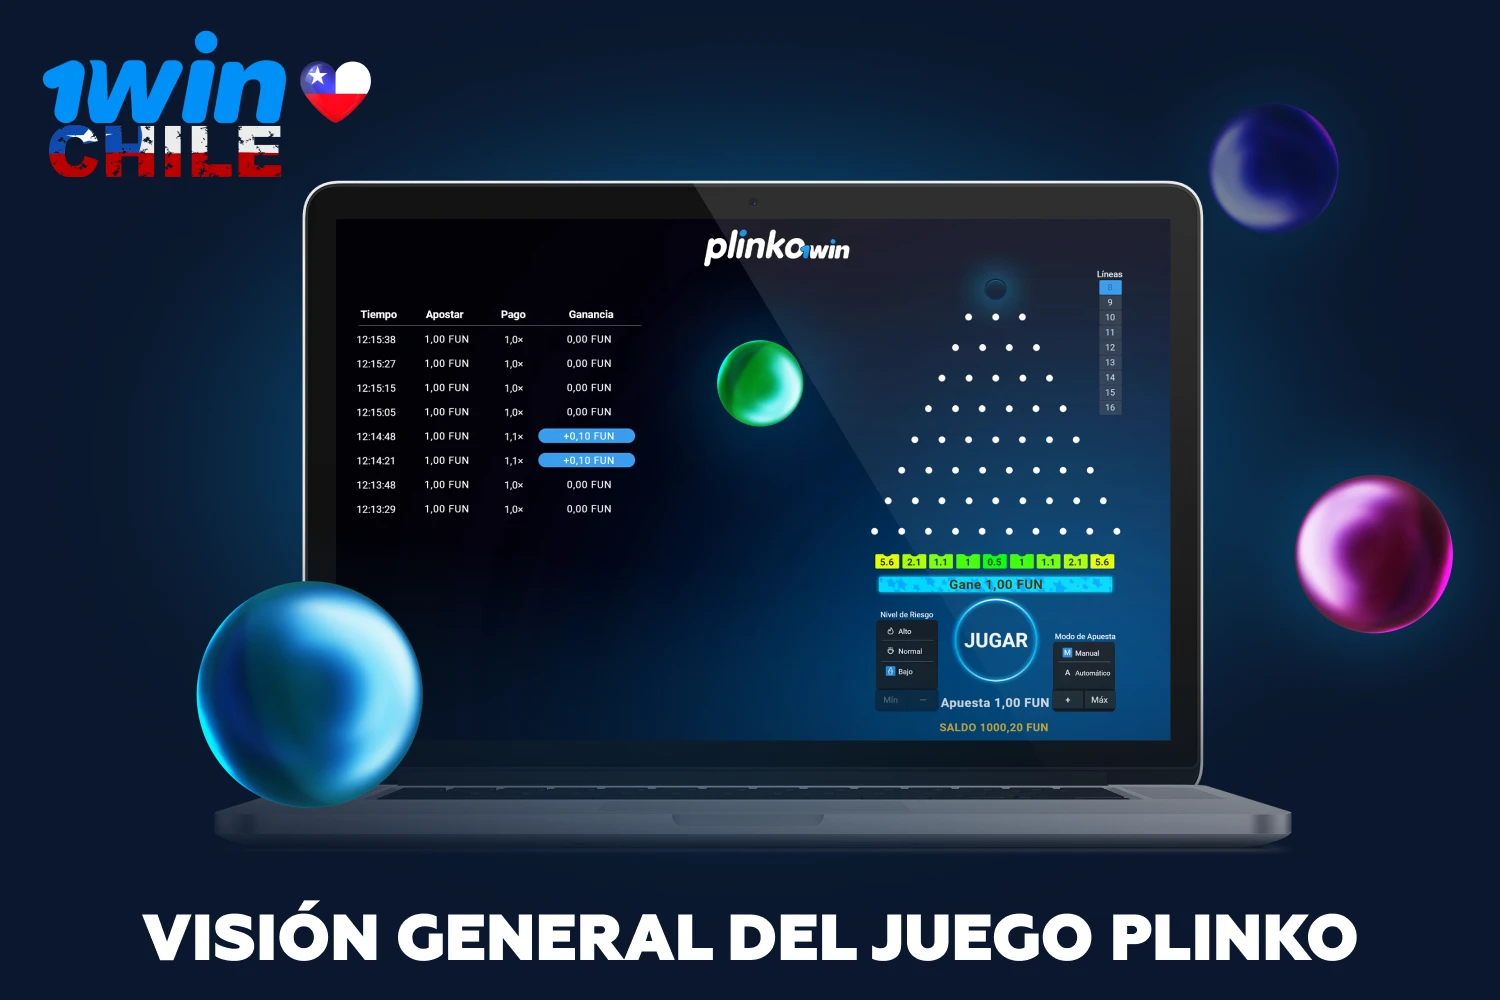 1win Plinko tiene reglas simples, y el algoritmo para jugar en línea por dinero real se lleva a la máxima simplicidad y es muy favorecido por los jugadores de Chile